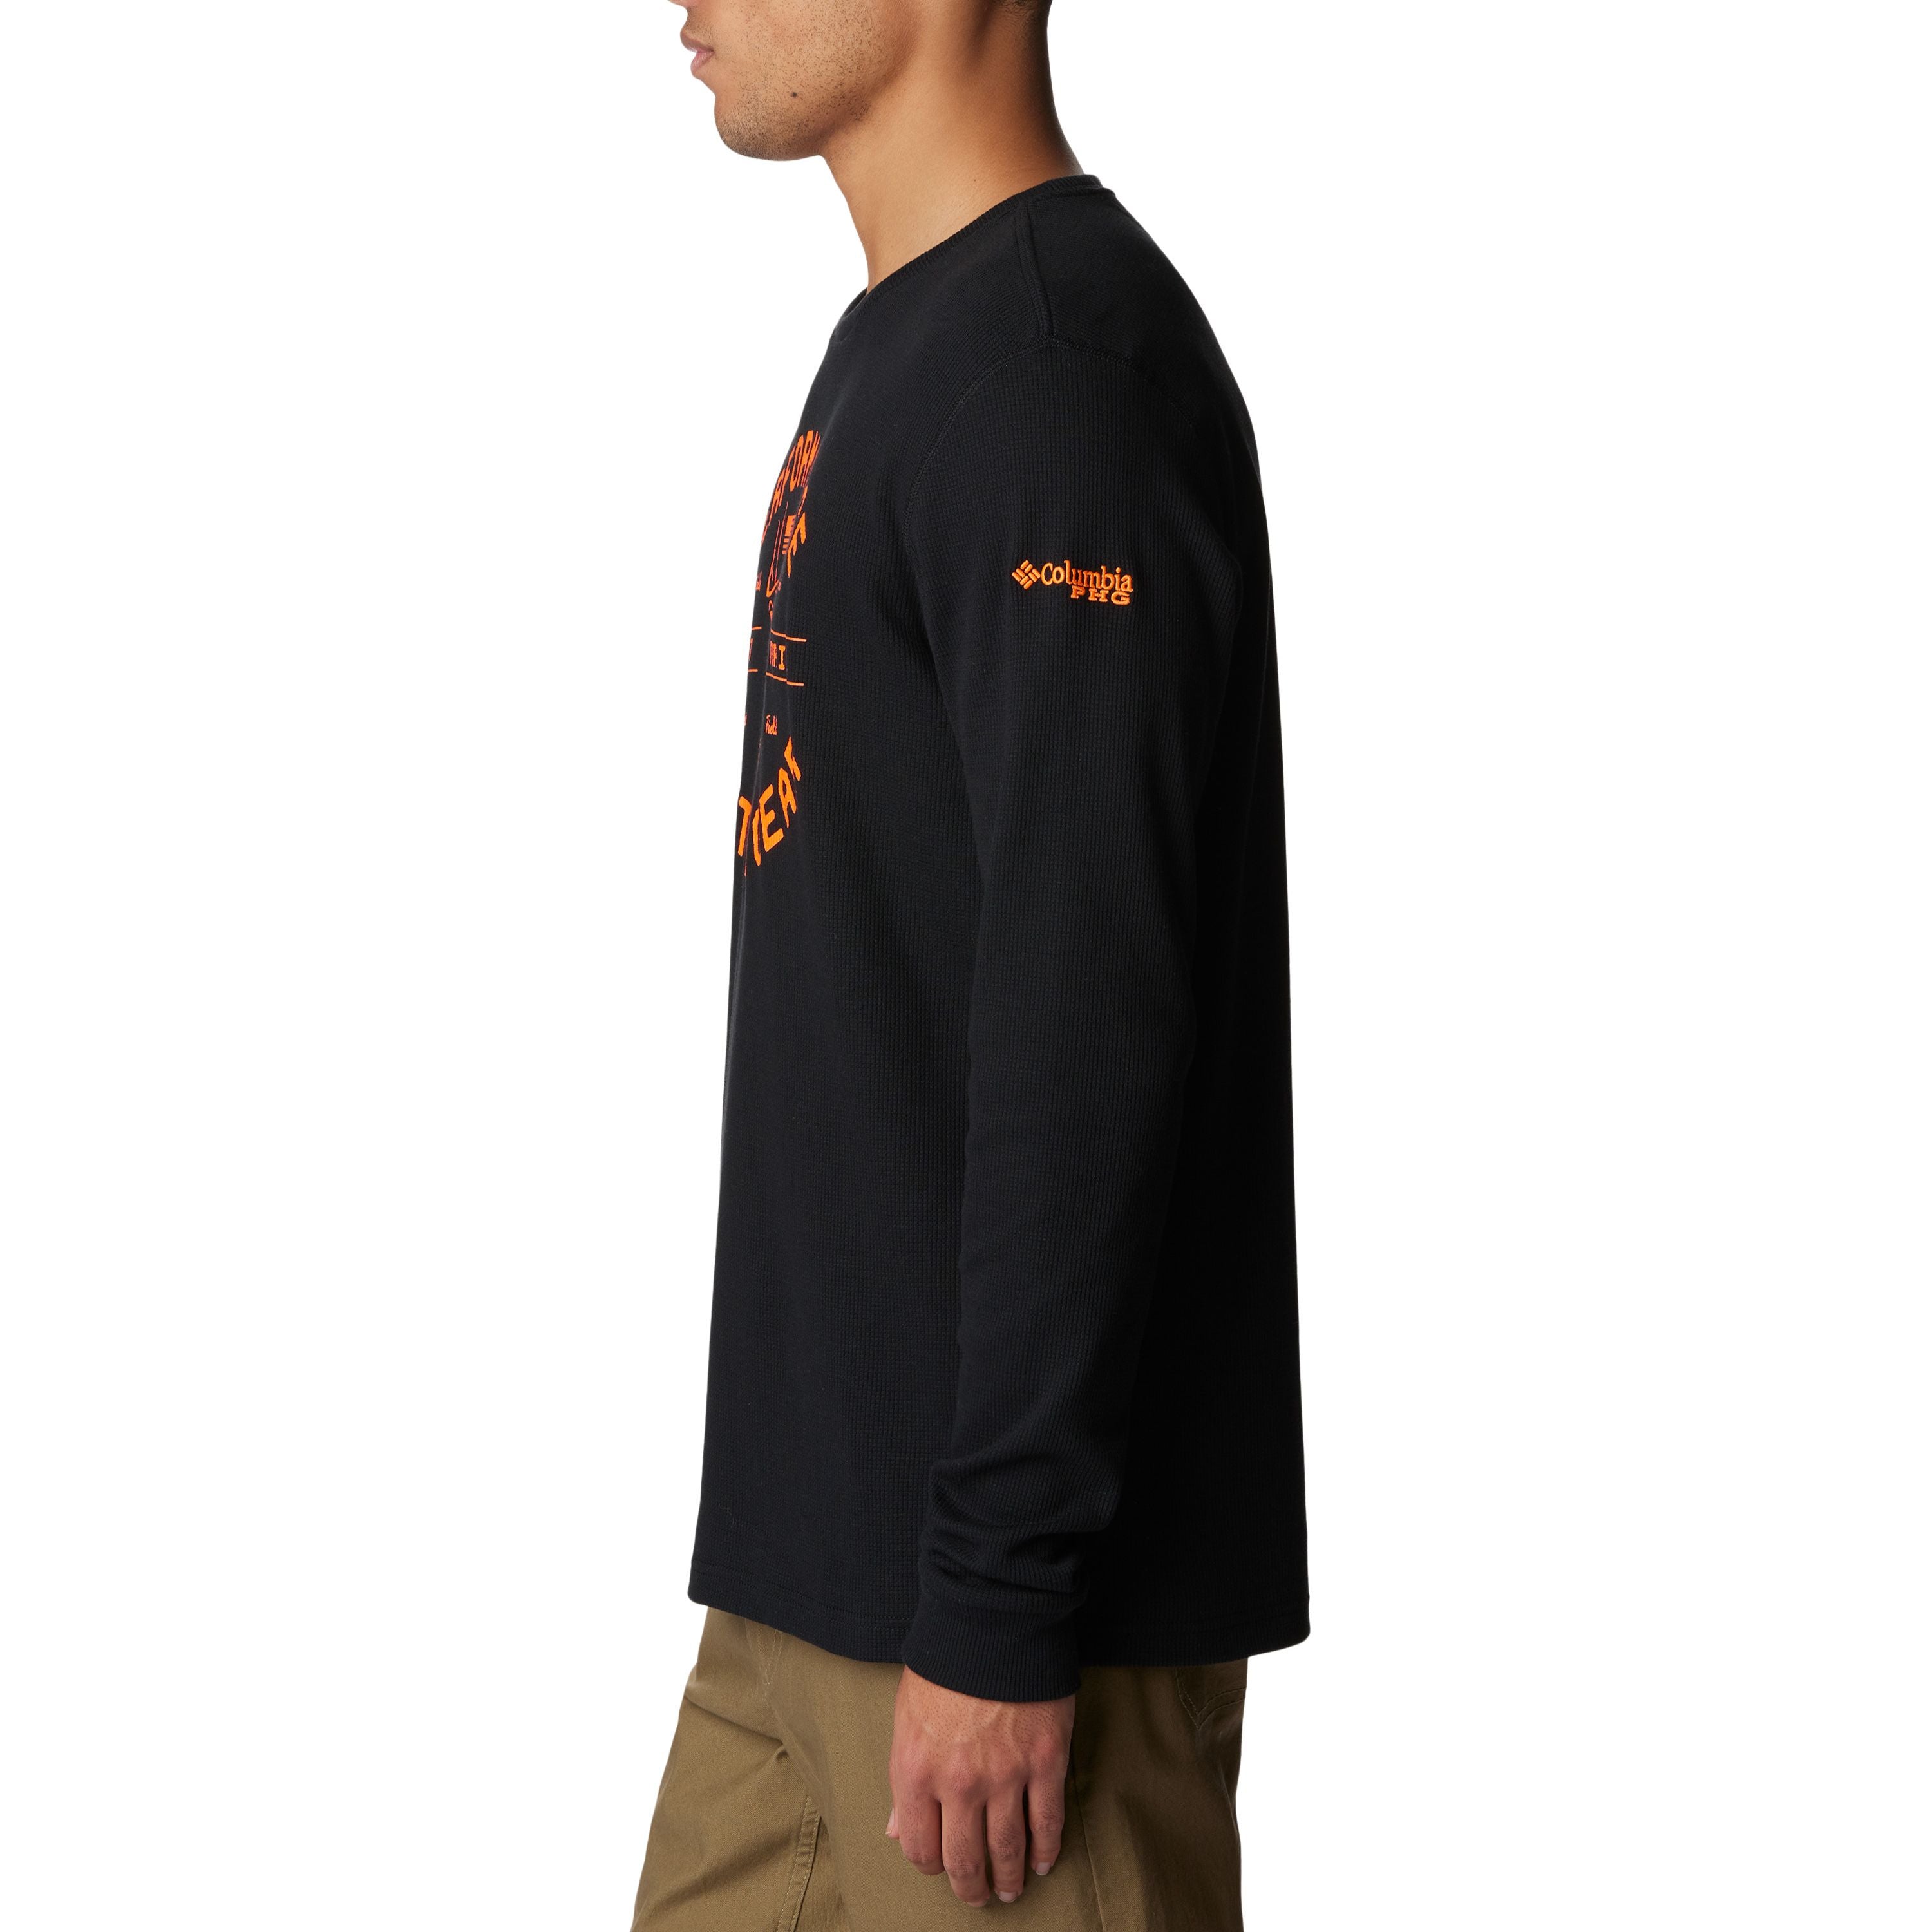 "PHG™ Built For It" Long sleeves shirt - Men's